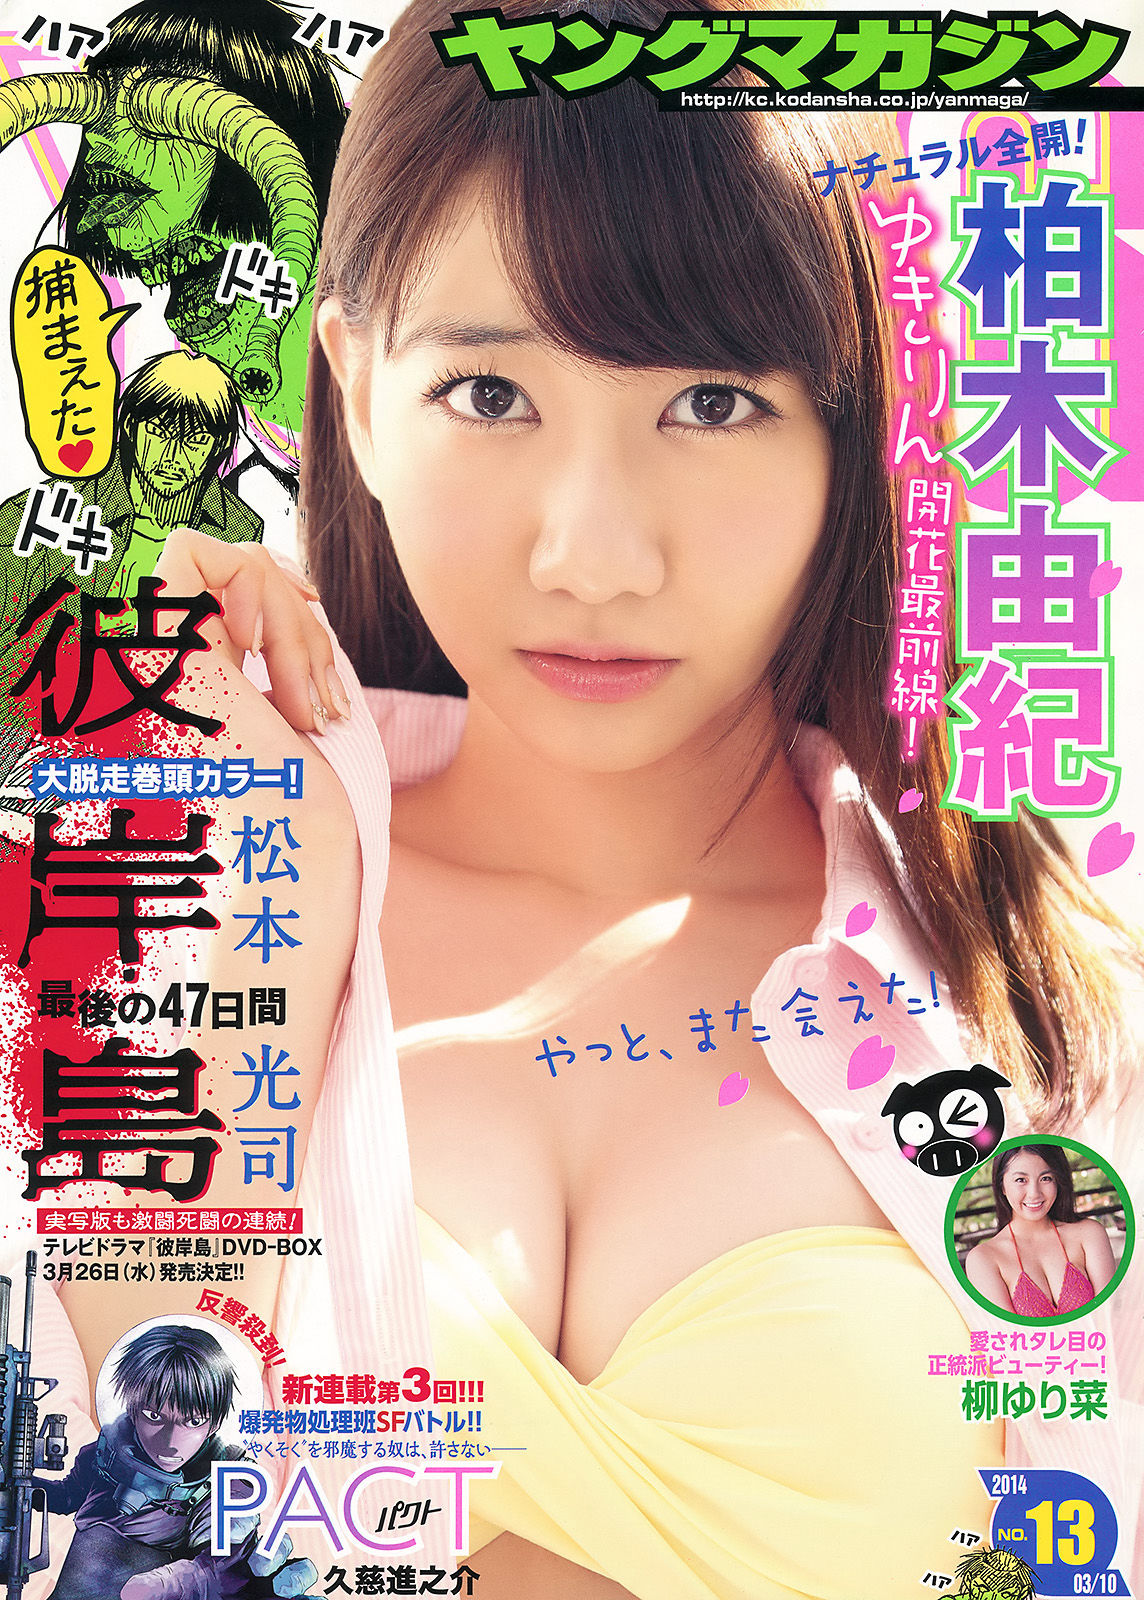 [Young Magazine]日本萌妹子:柏木由纪高品质壁纸图片珍藏版(11P)